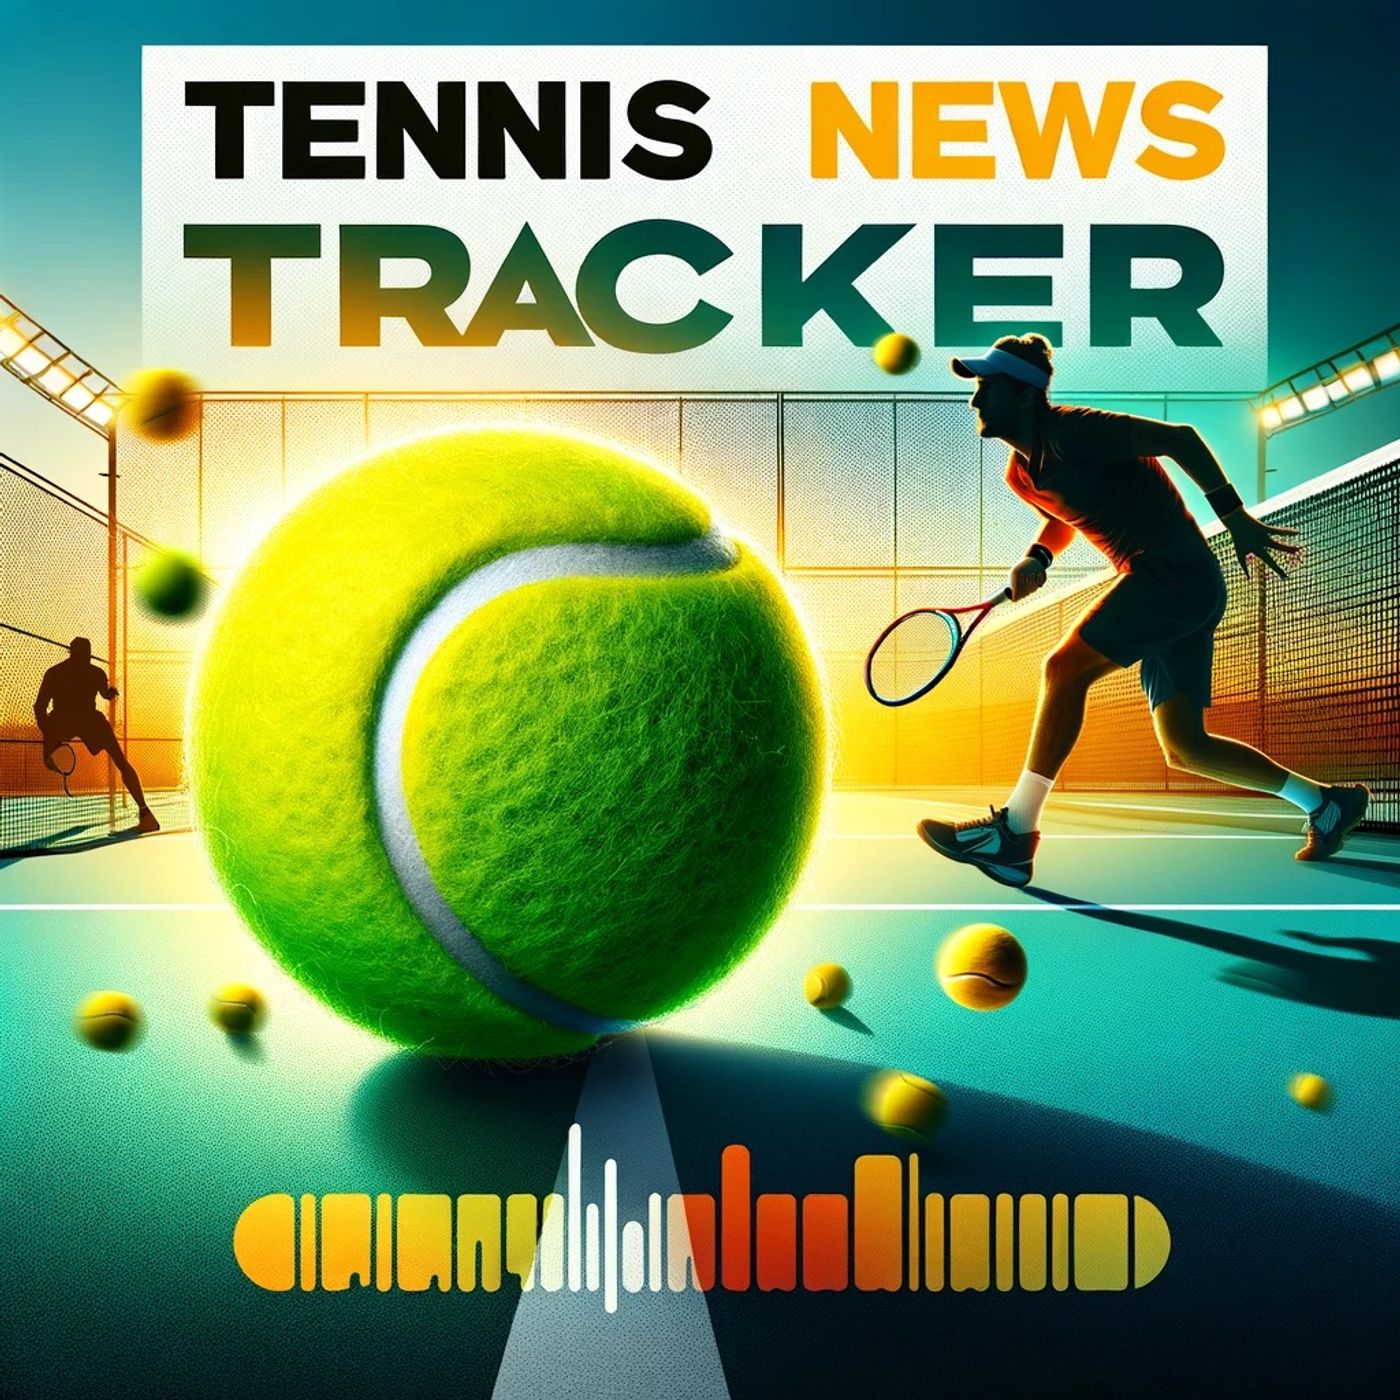 Tennis News Tracker - USTA